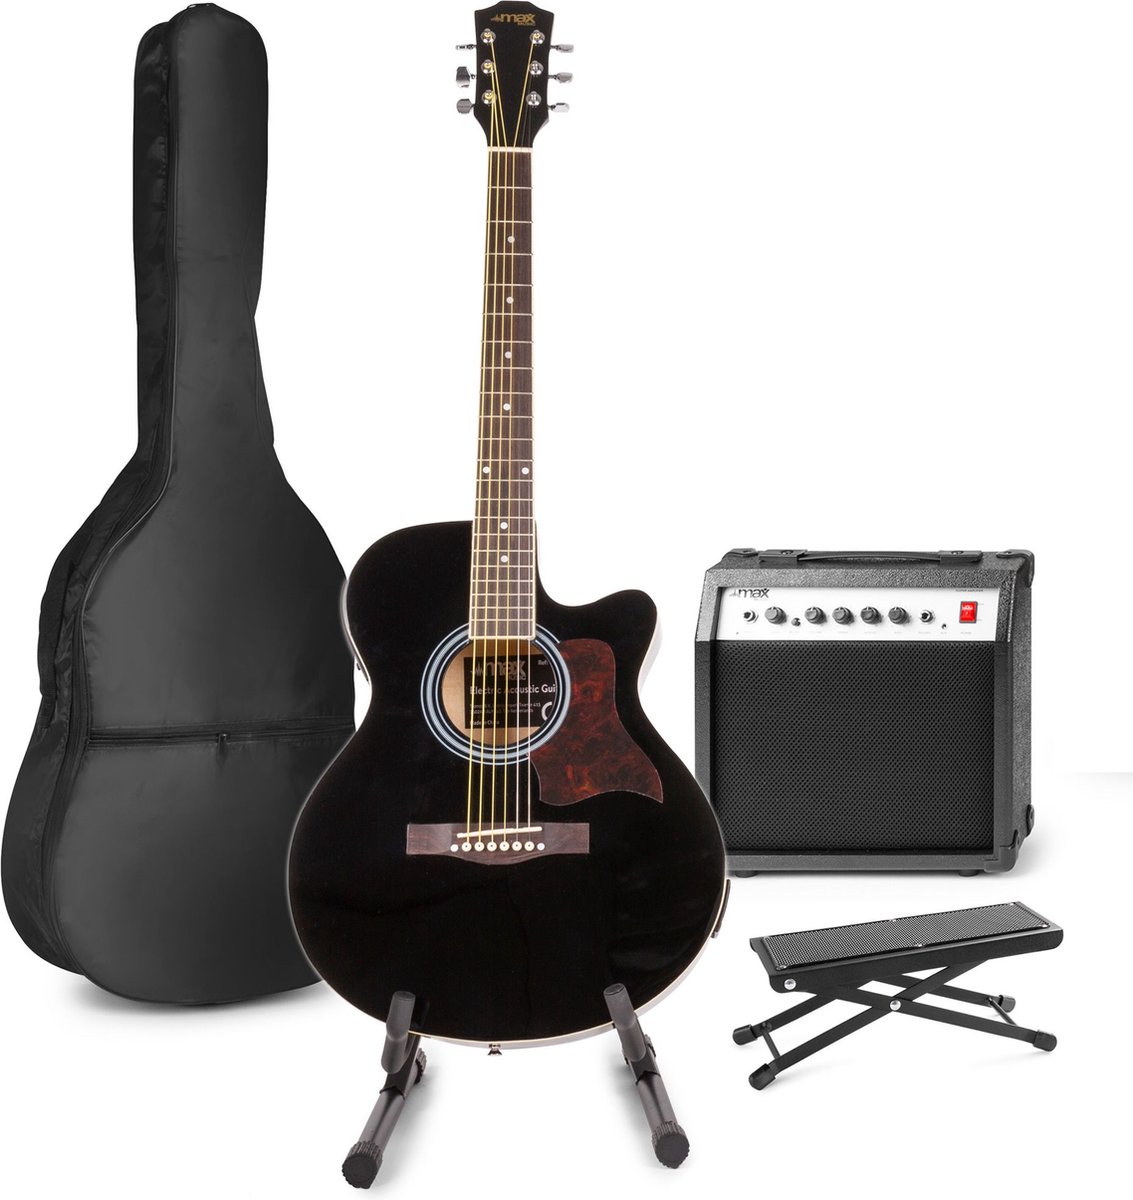 Elektrisch akoestische gitaar - MAX ShowKit gitaarset met 40W gitaar versterker, gitaar standaard, gitaar voetenbankje, gitaar stemapparaat, gitaartas en plectrum - Zwart